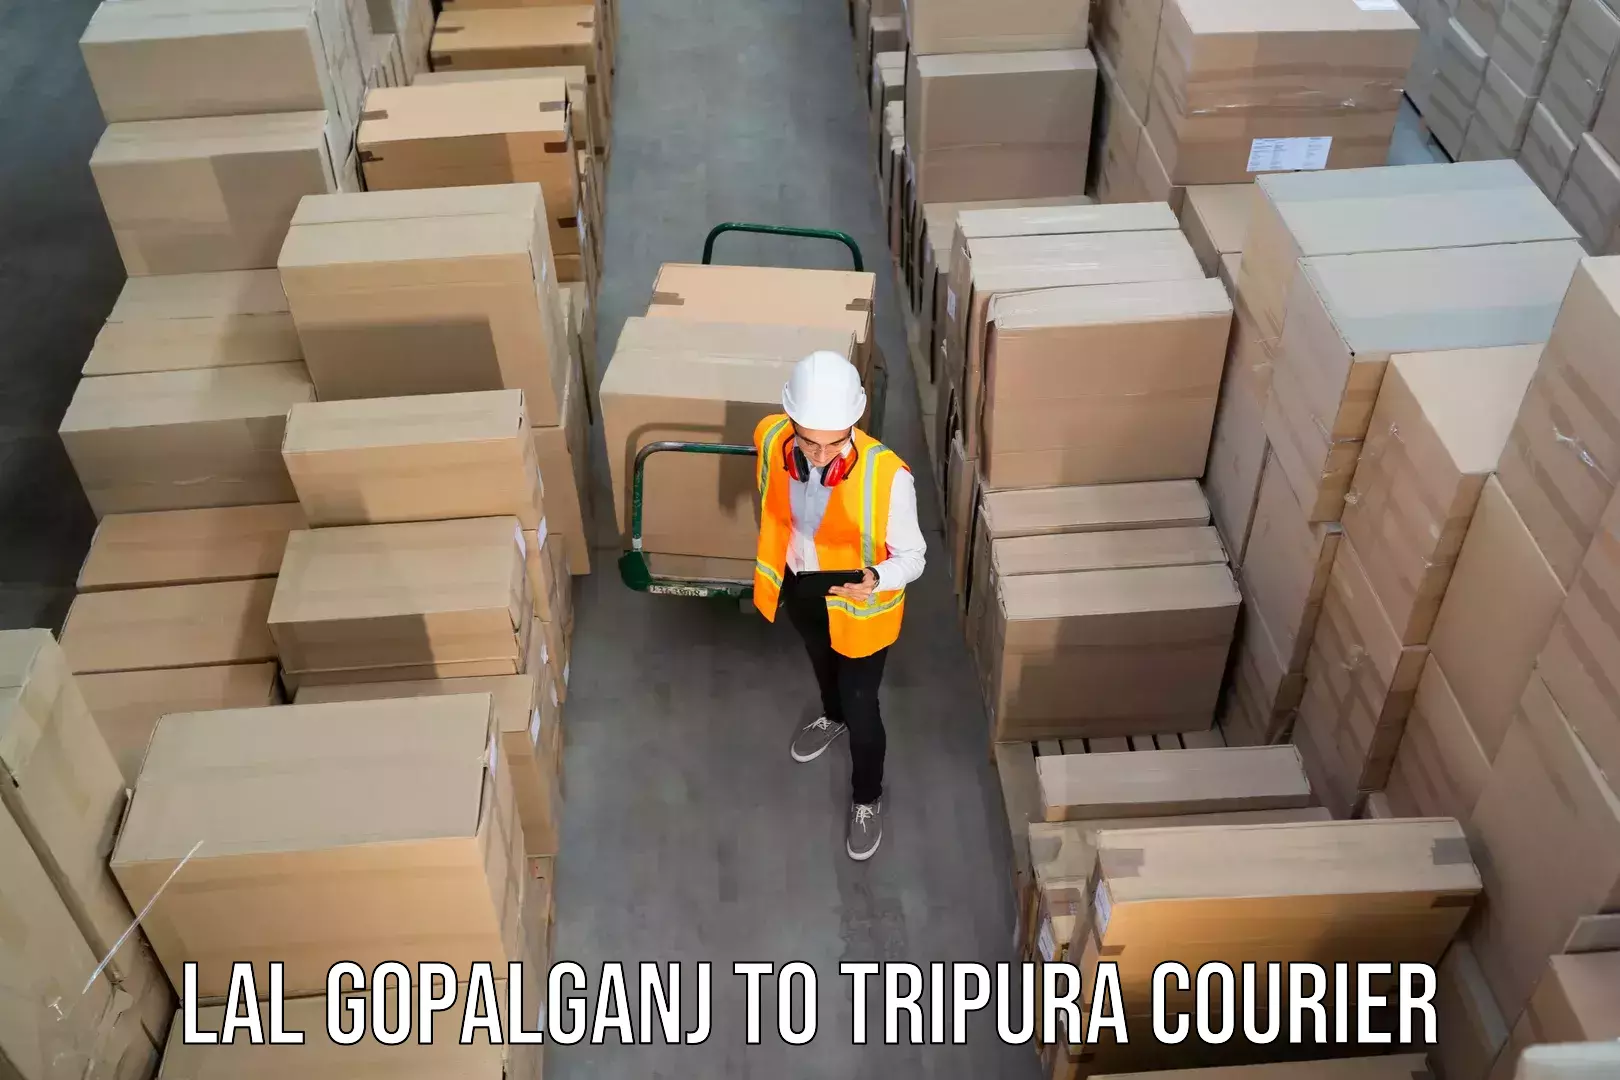 User-friendly courier app Lal Gopalganj to IIIT Agartala